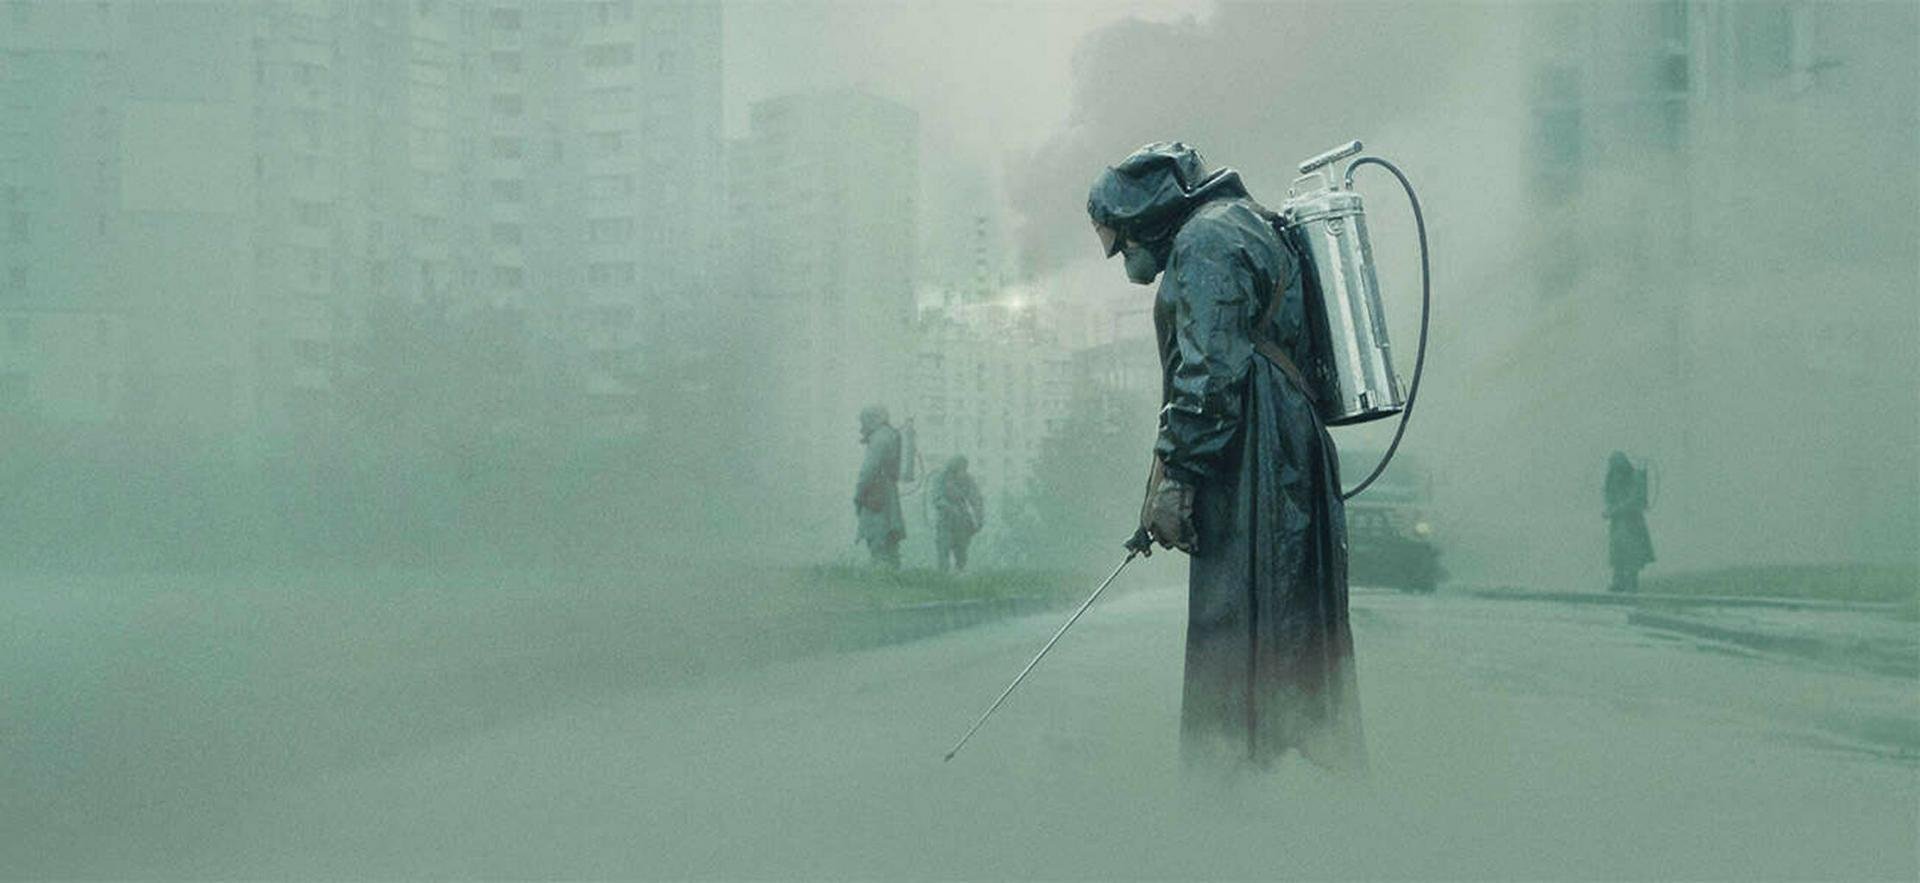 Miniserie Chernobyl